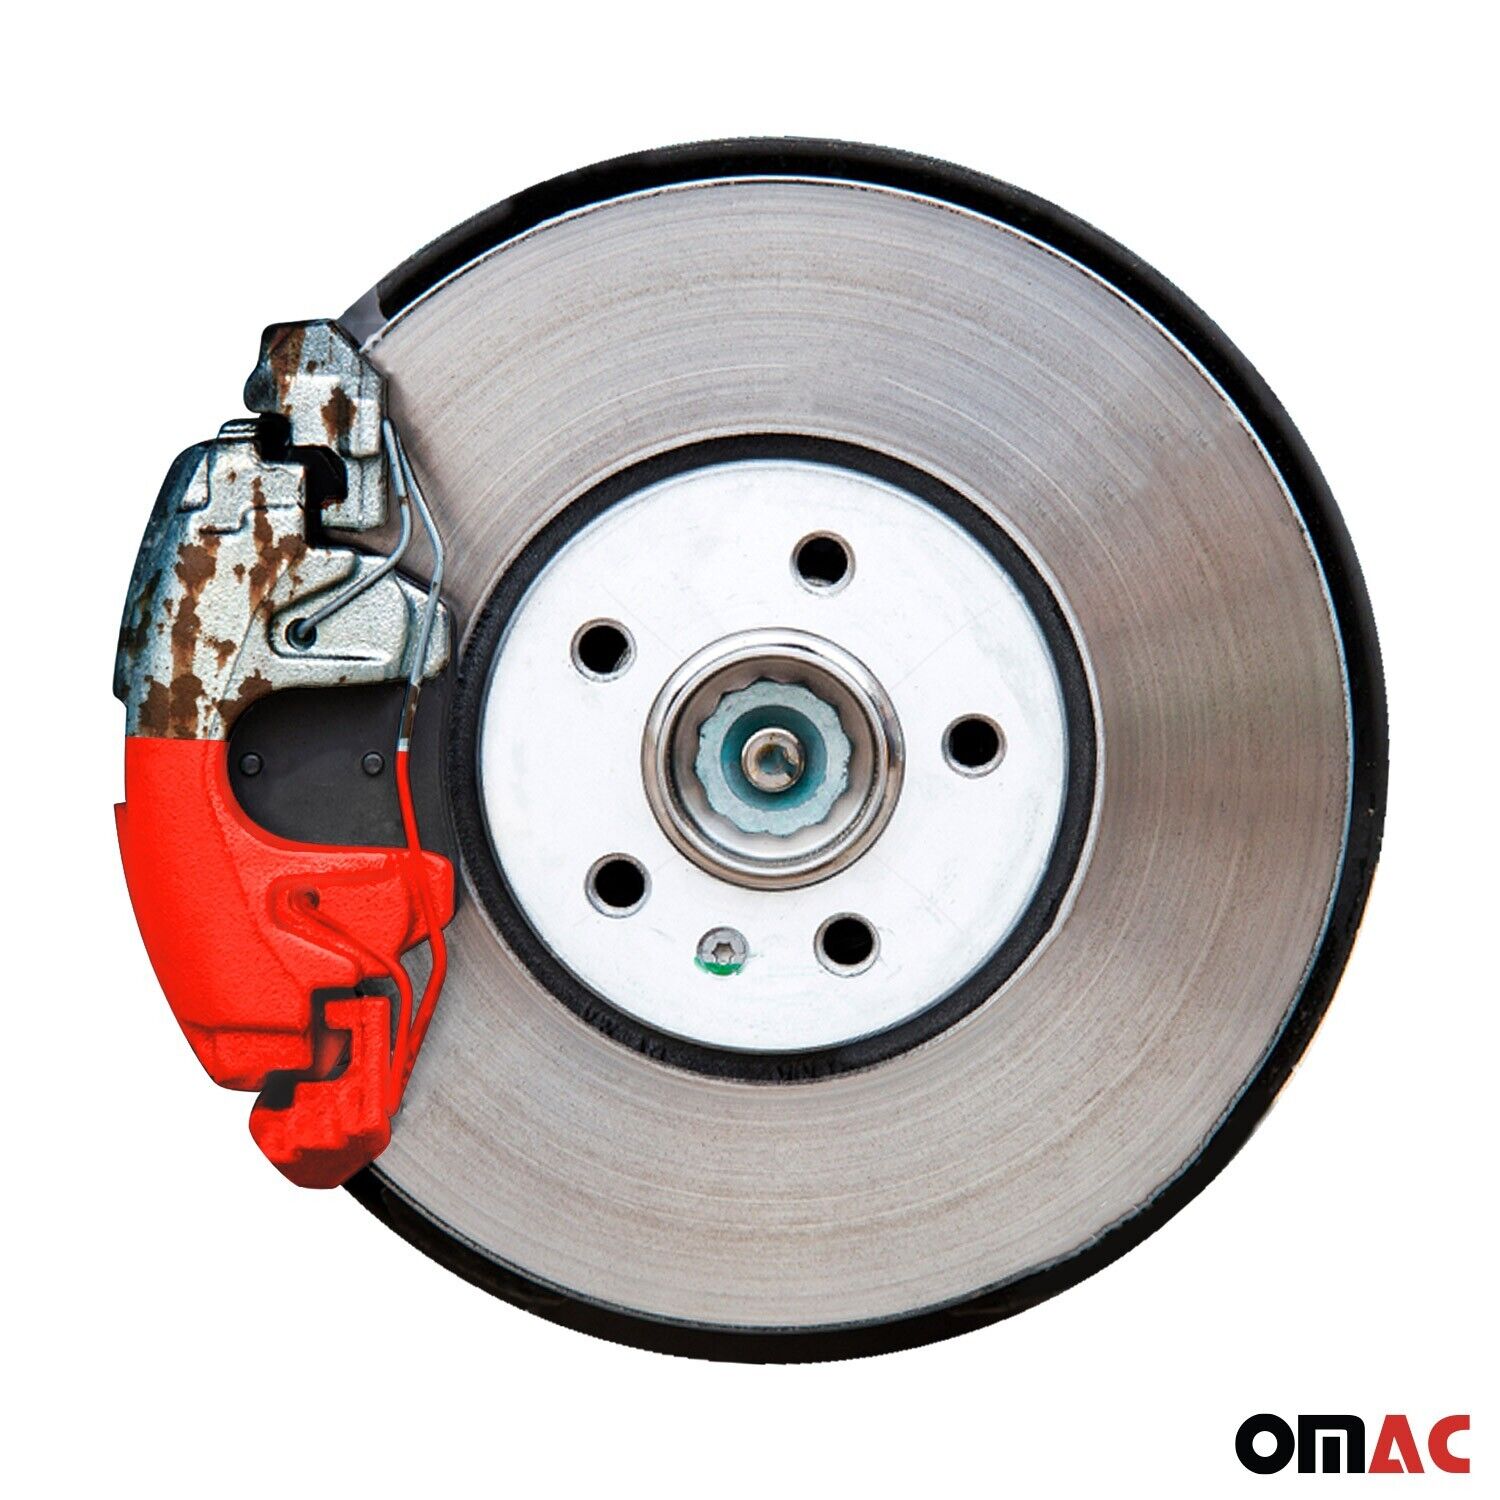 OMAC Bremssattellack Bremssattelfarbe Texas Rot Glänz Auto Lack Set